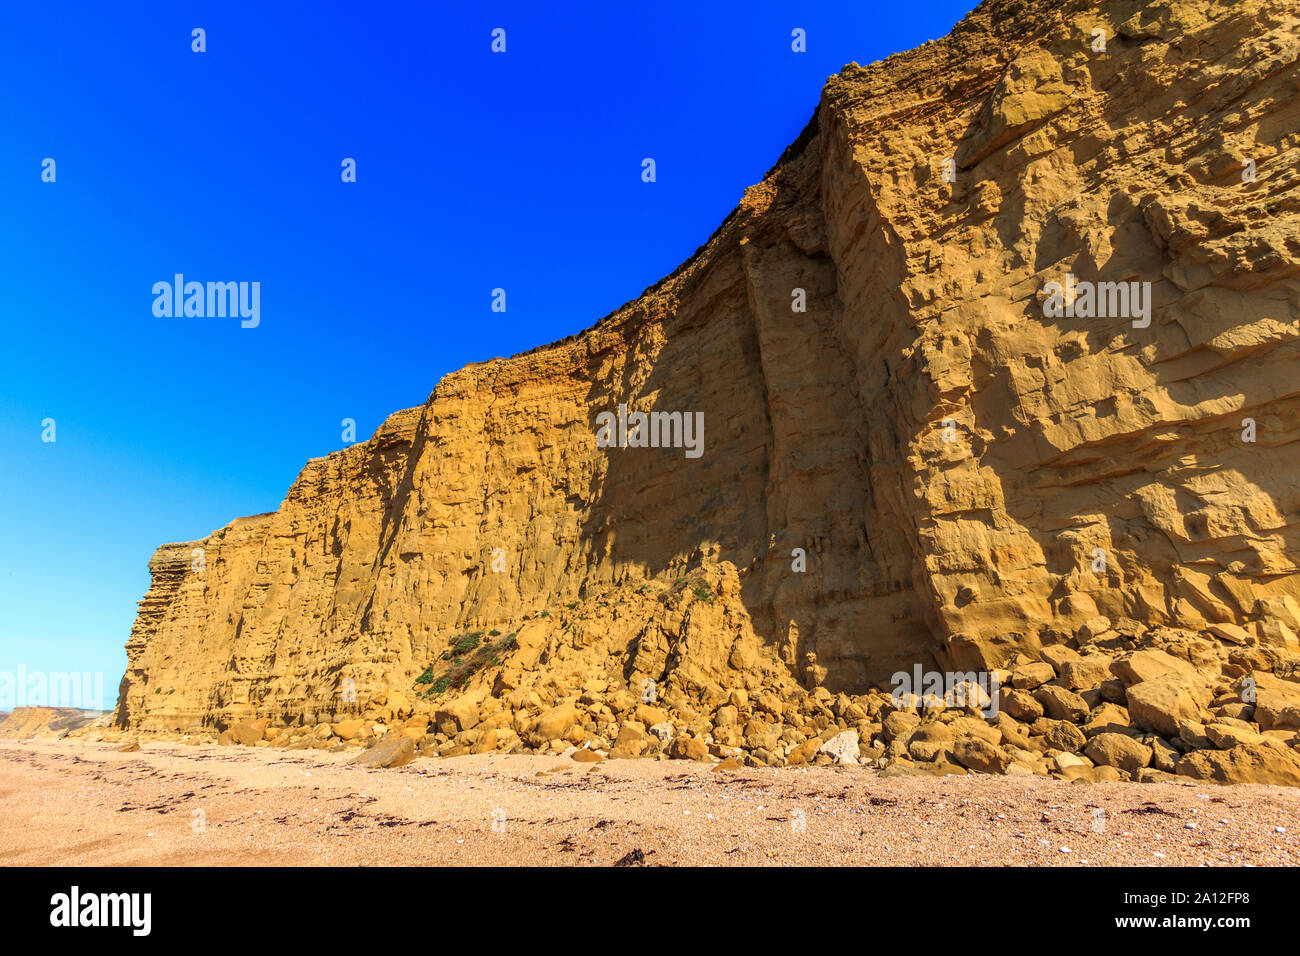 Spiaggia di alveare pericolo cliff cade vicino a West Bay resort costa, Jurassic Coast, sbriciolare scogliere di arenaria,sito UNESCO, Dorset, England, Regno Unito, GB Foto Stock